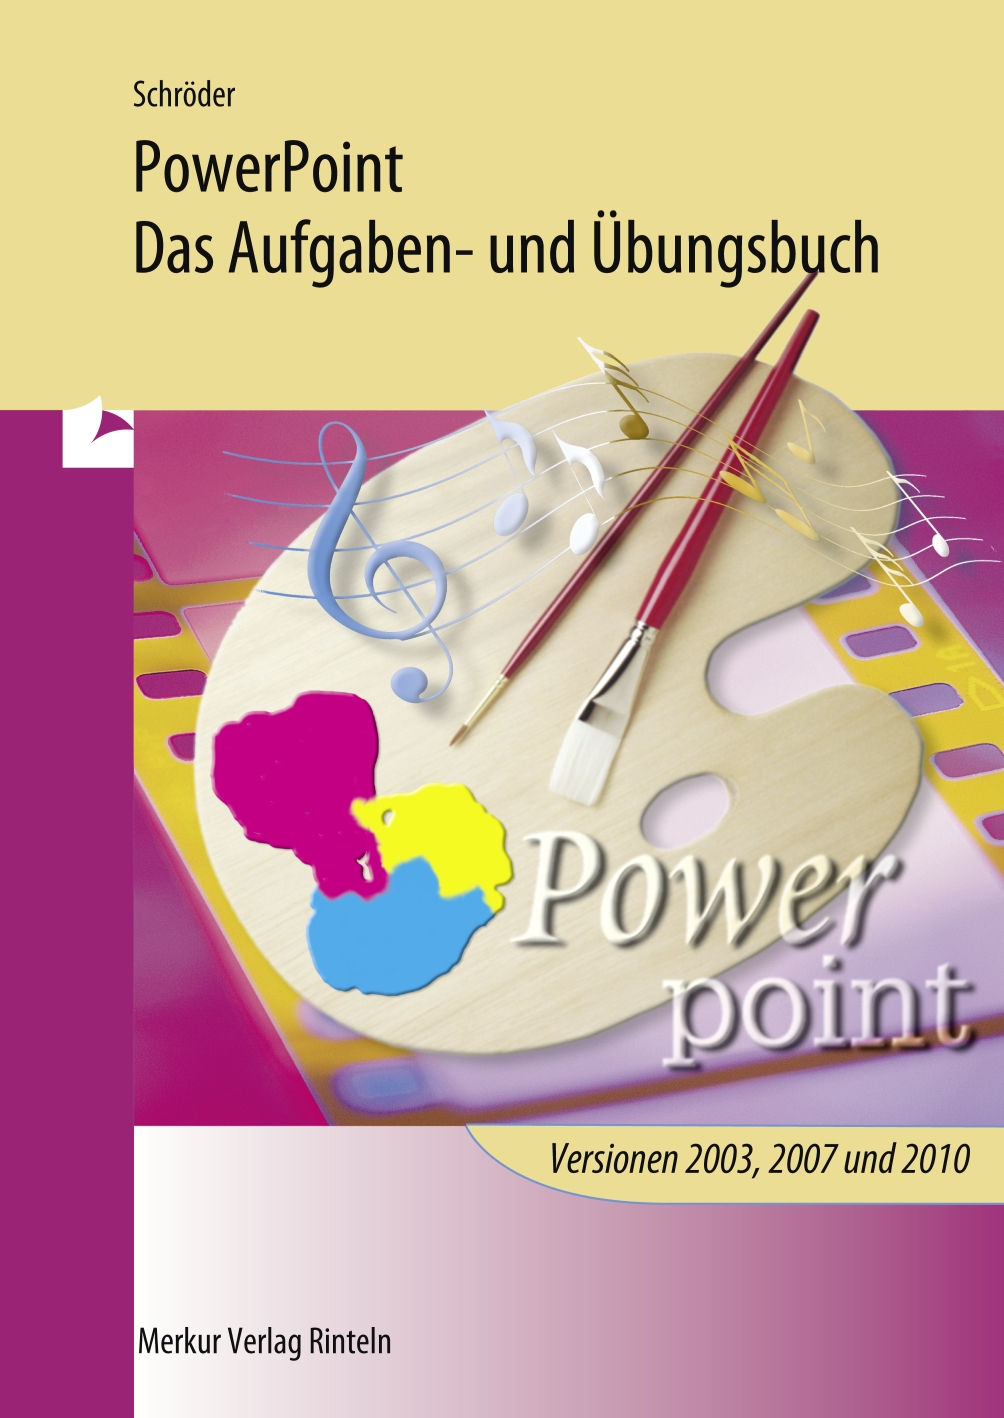 PowerPoint - Aufgaben- und Übungsbuch für die Programmversionen 2003, 2007 und 2010